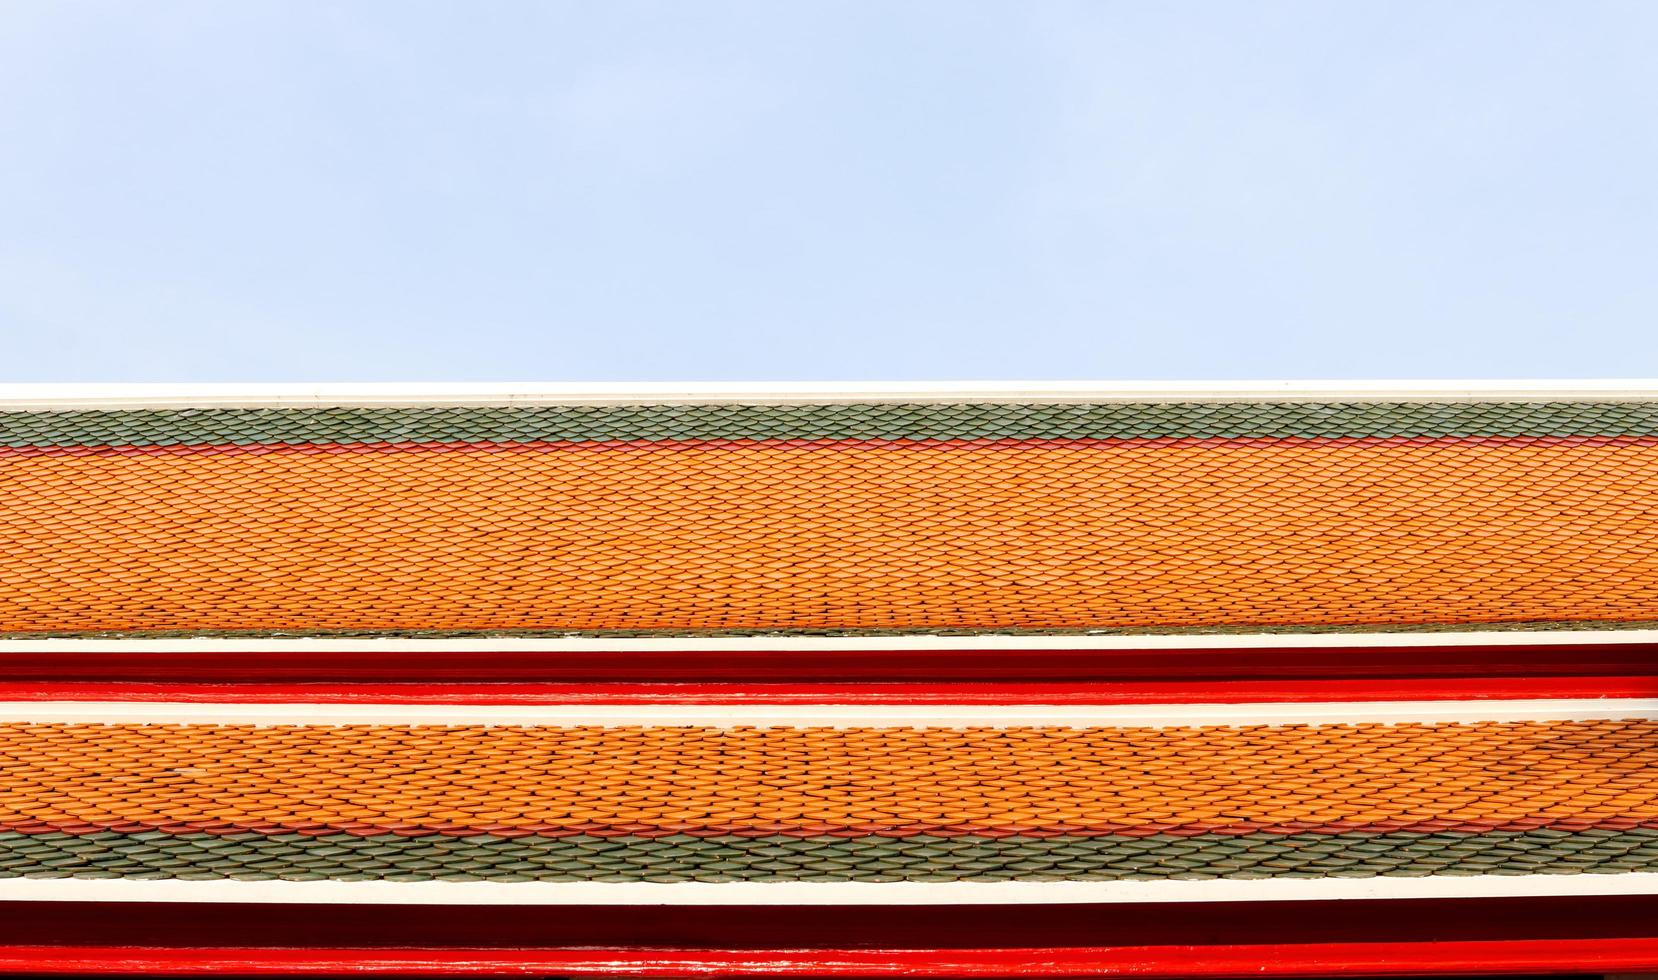 gammal stil av keramisk bricka tak mönster och ljus blå himmel. grön, röd, orange Färg rad av plattor på taket i tempel, thailand. foto